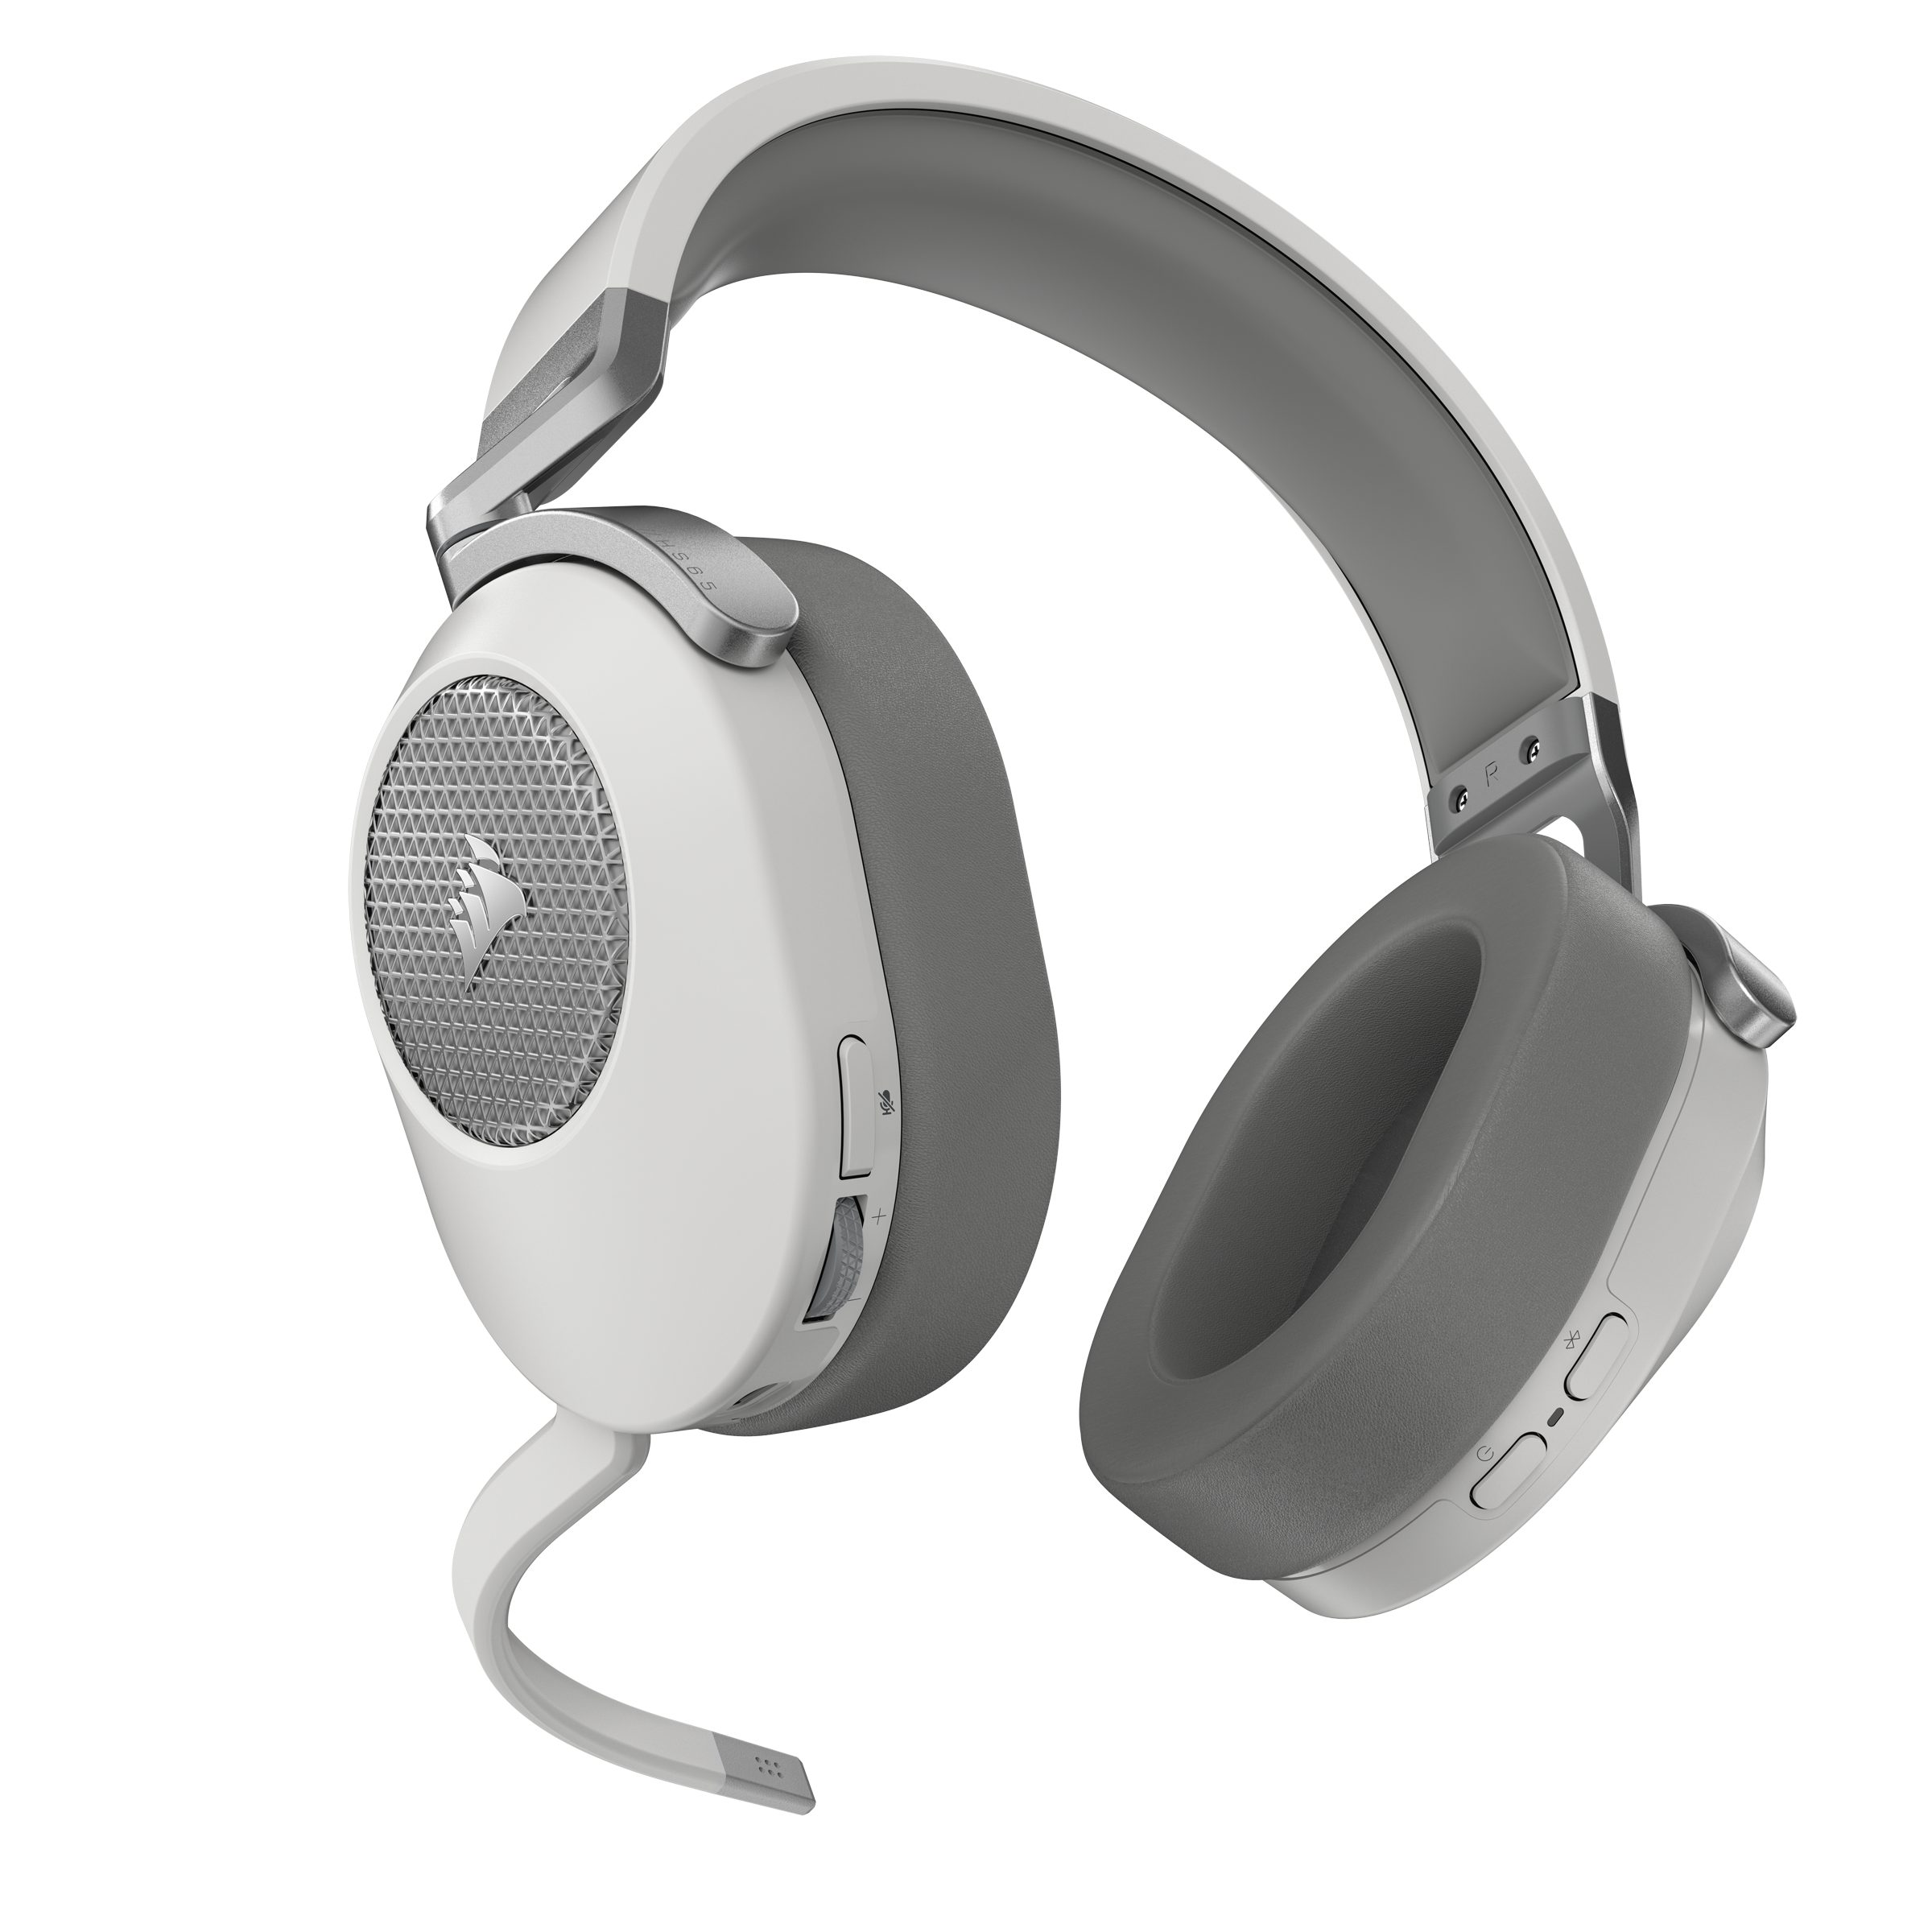 Corsair Gaming-Headset Weiß Bluetooth, HS65 - Wireless) (A2DP Wireless